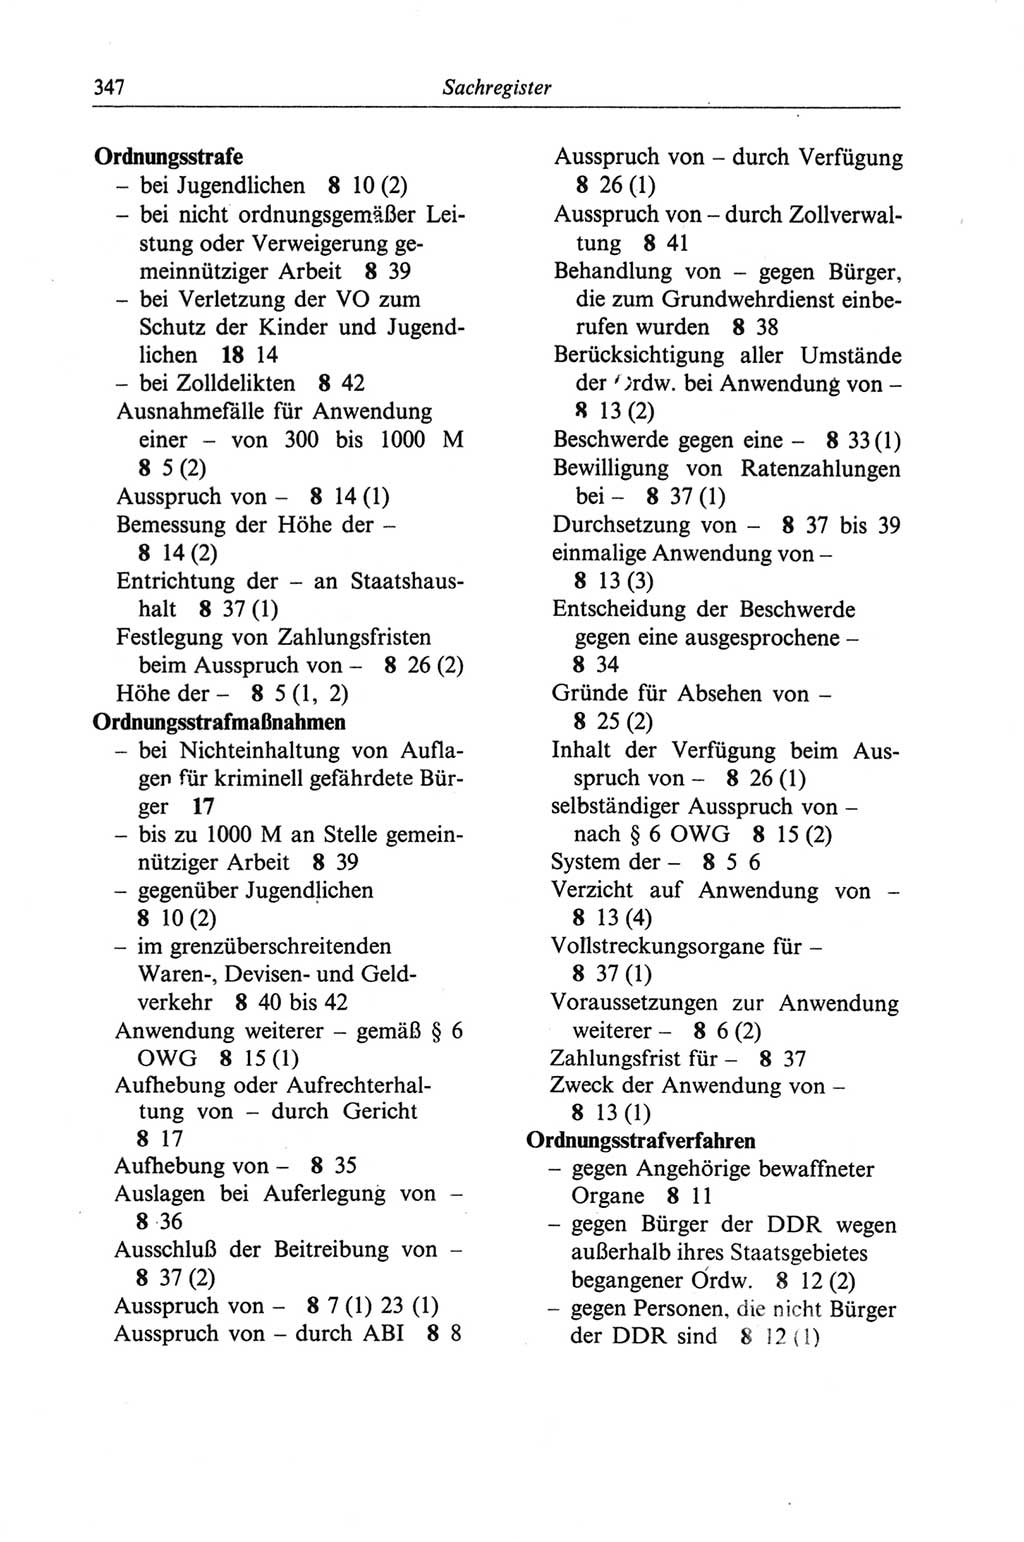 Strafgesetzbuch (StGB) der Deutschen Demokratischen Republik (DDR) und angrenzende Gesetze und Bestimmungen 1968, Seite 347 (StGB Ges. Best. DDR 1968, S. 347)